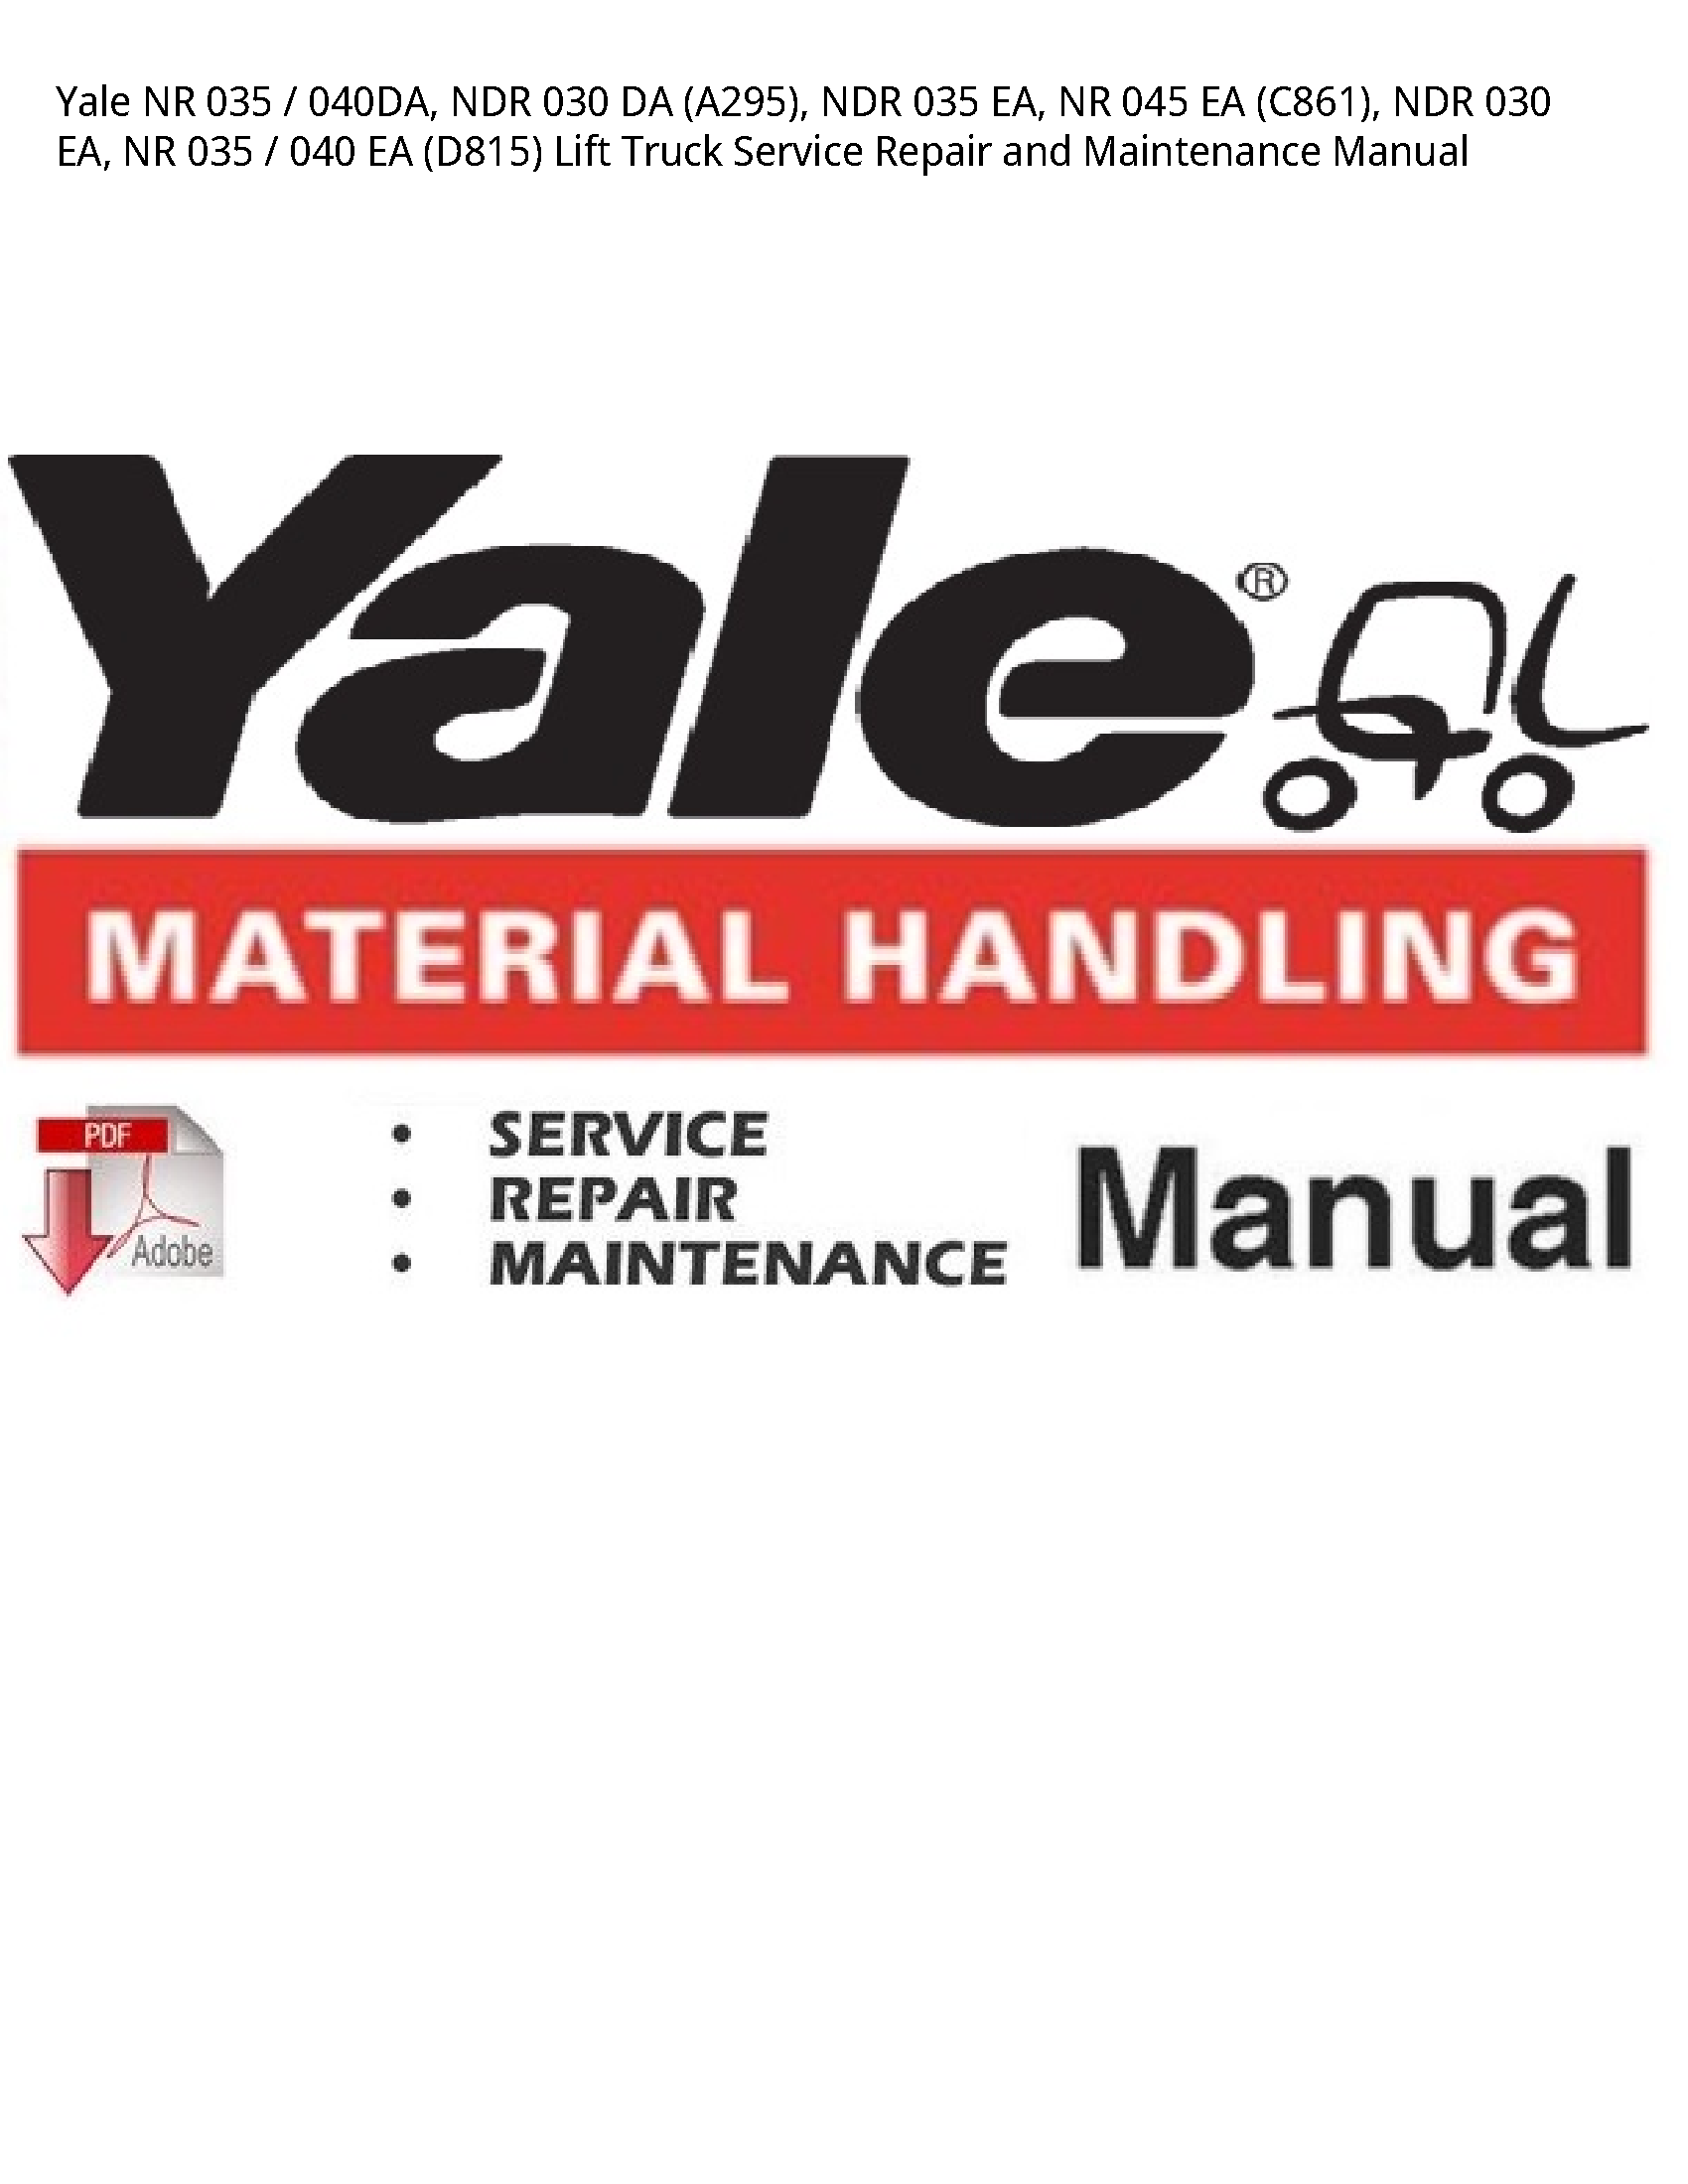 Yale 035 NR NDR DA NDR EA manual